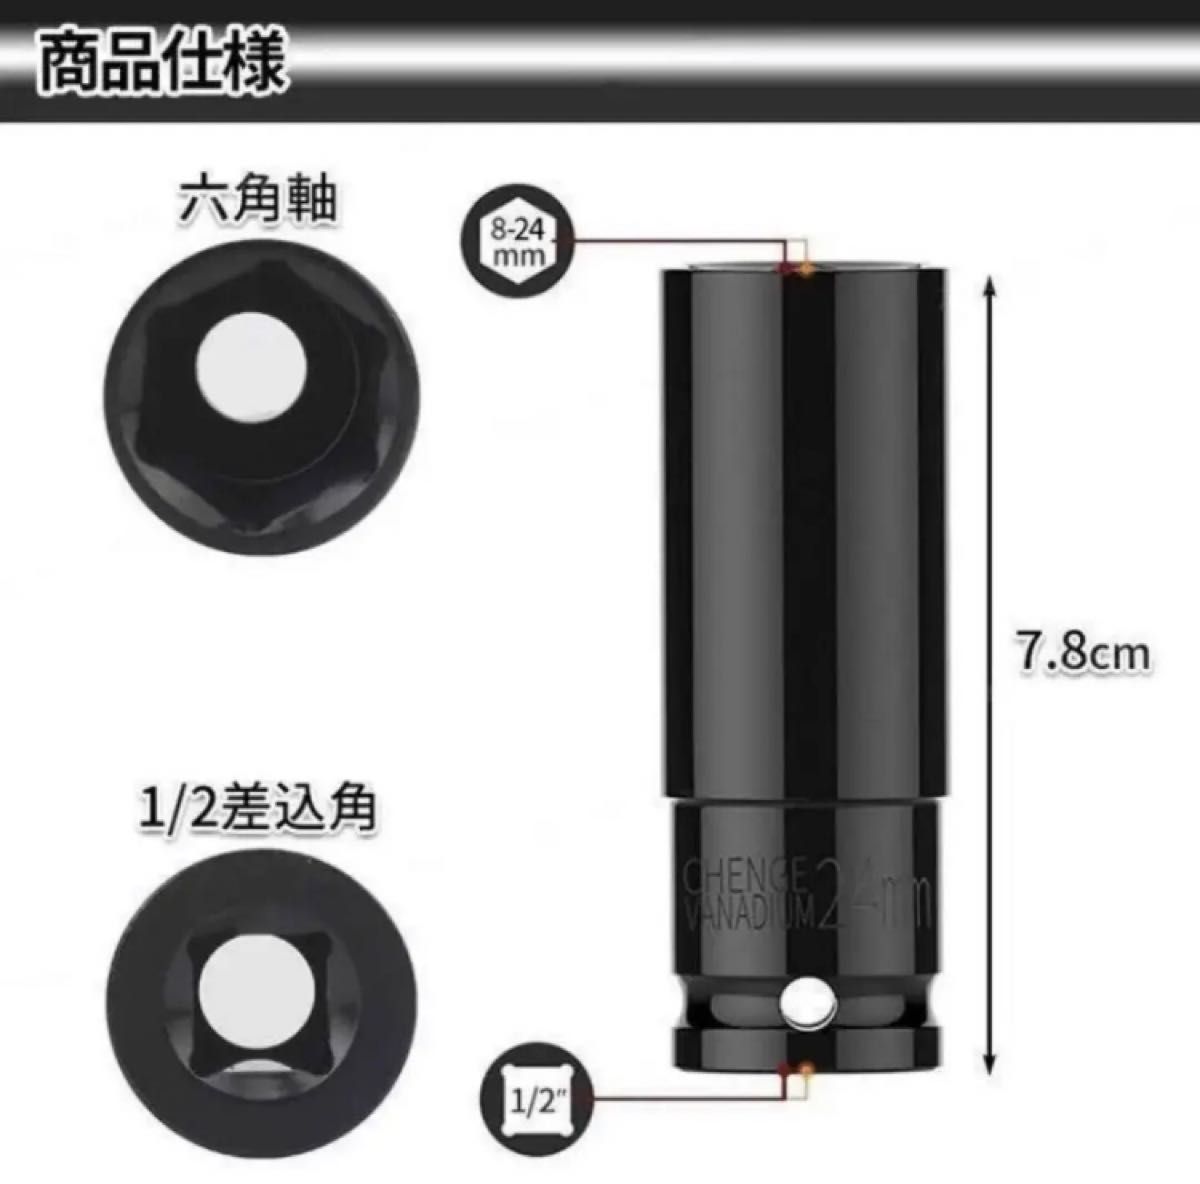 8-24mm ディープソケット 10本セット 耐摩耗性 防錆性 DIY トルクス